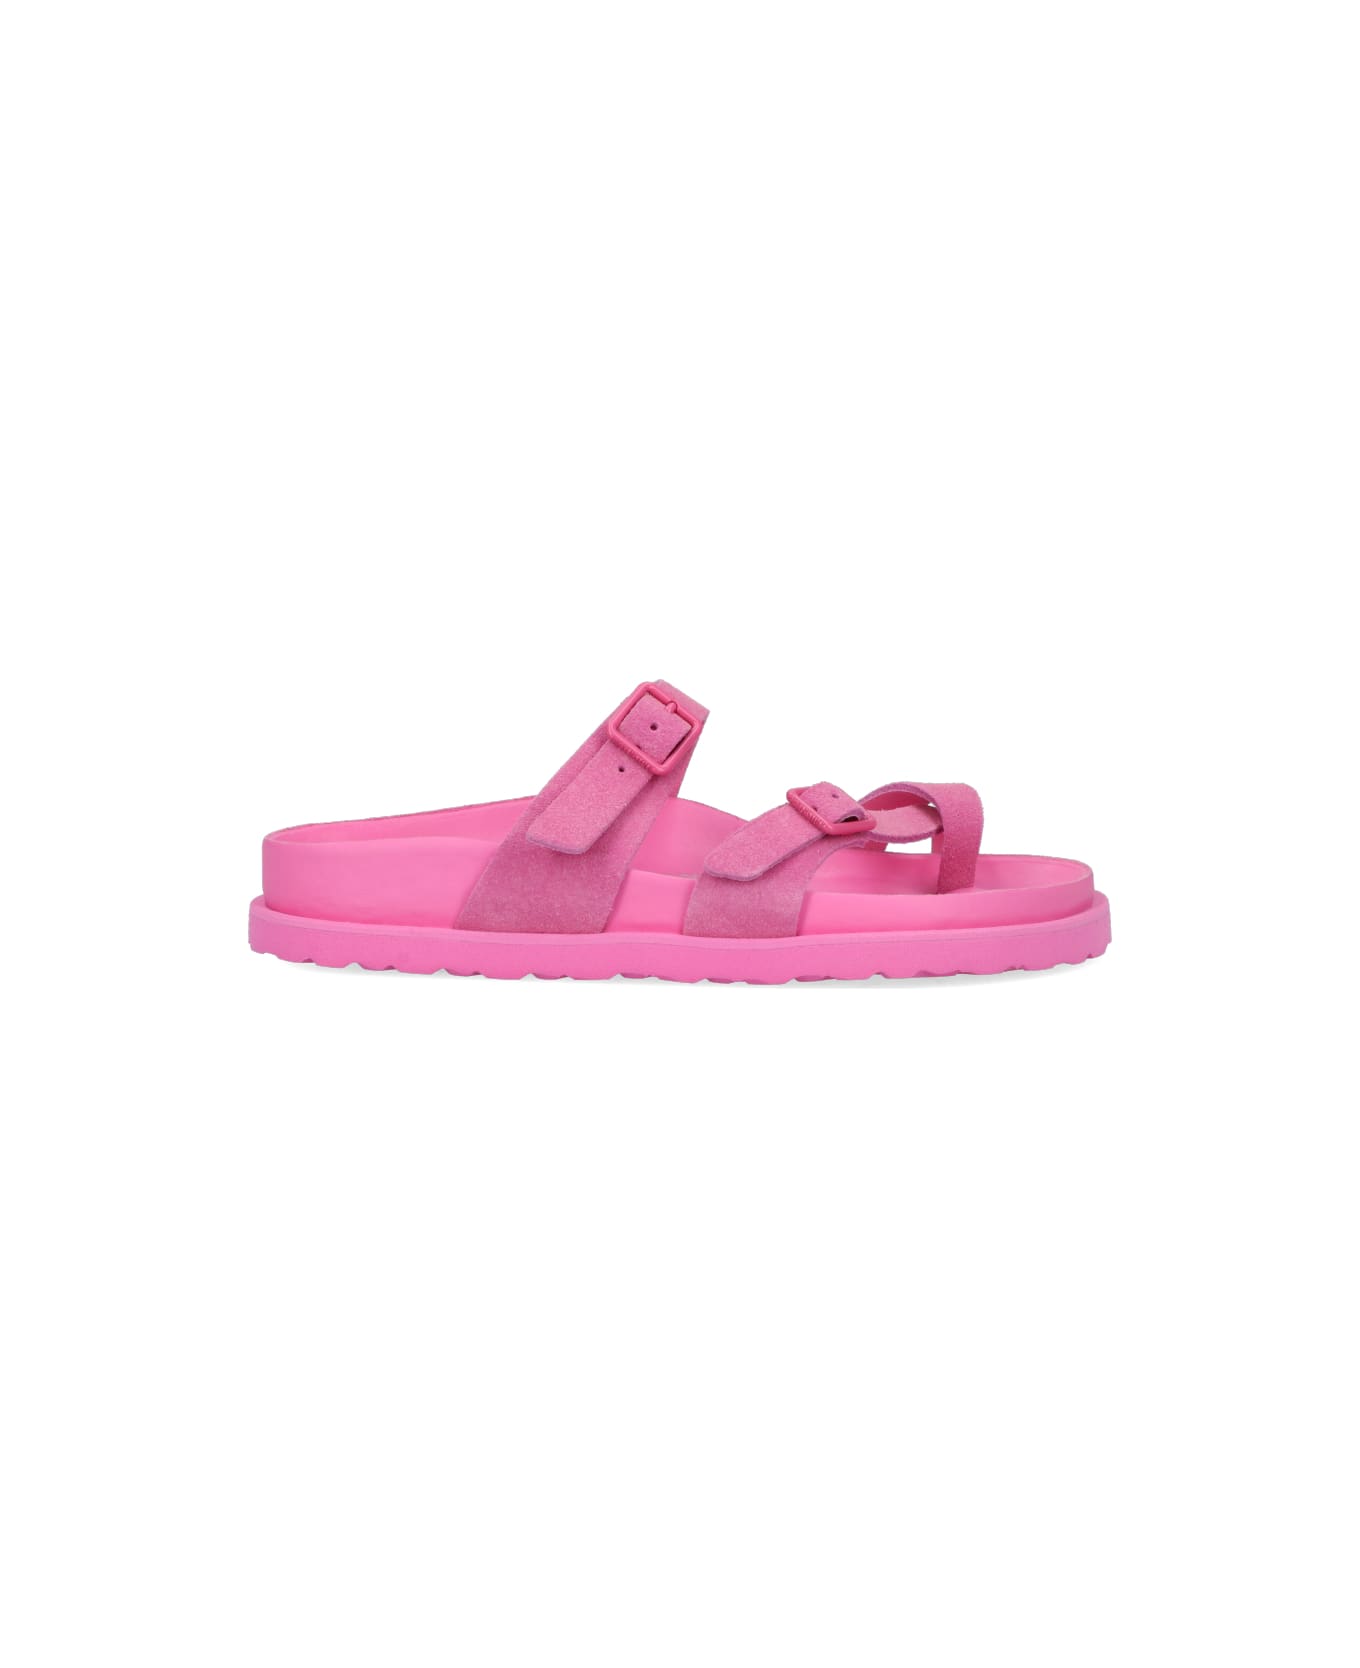 Birkenstock Arizona Suede Effect Sandals - Pink